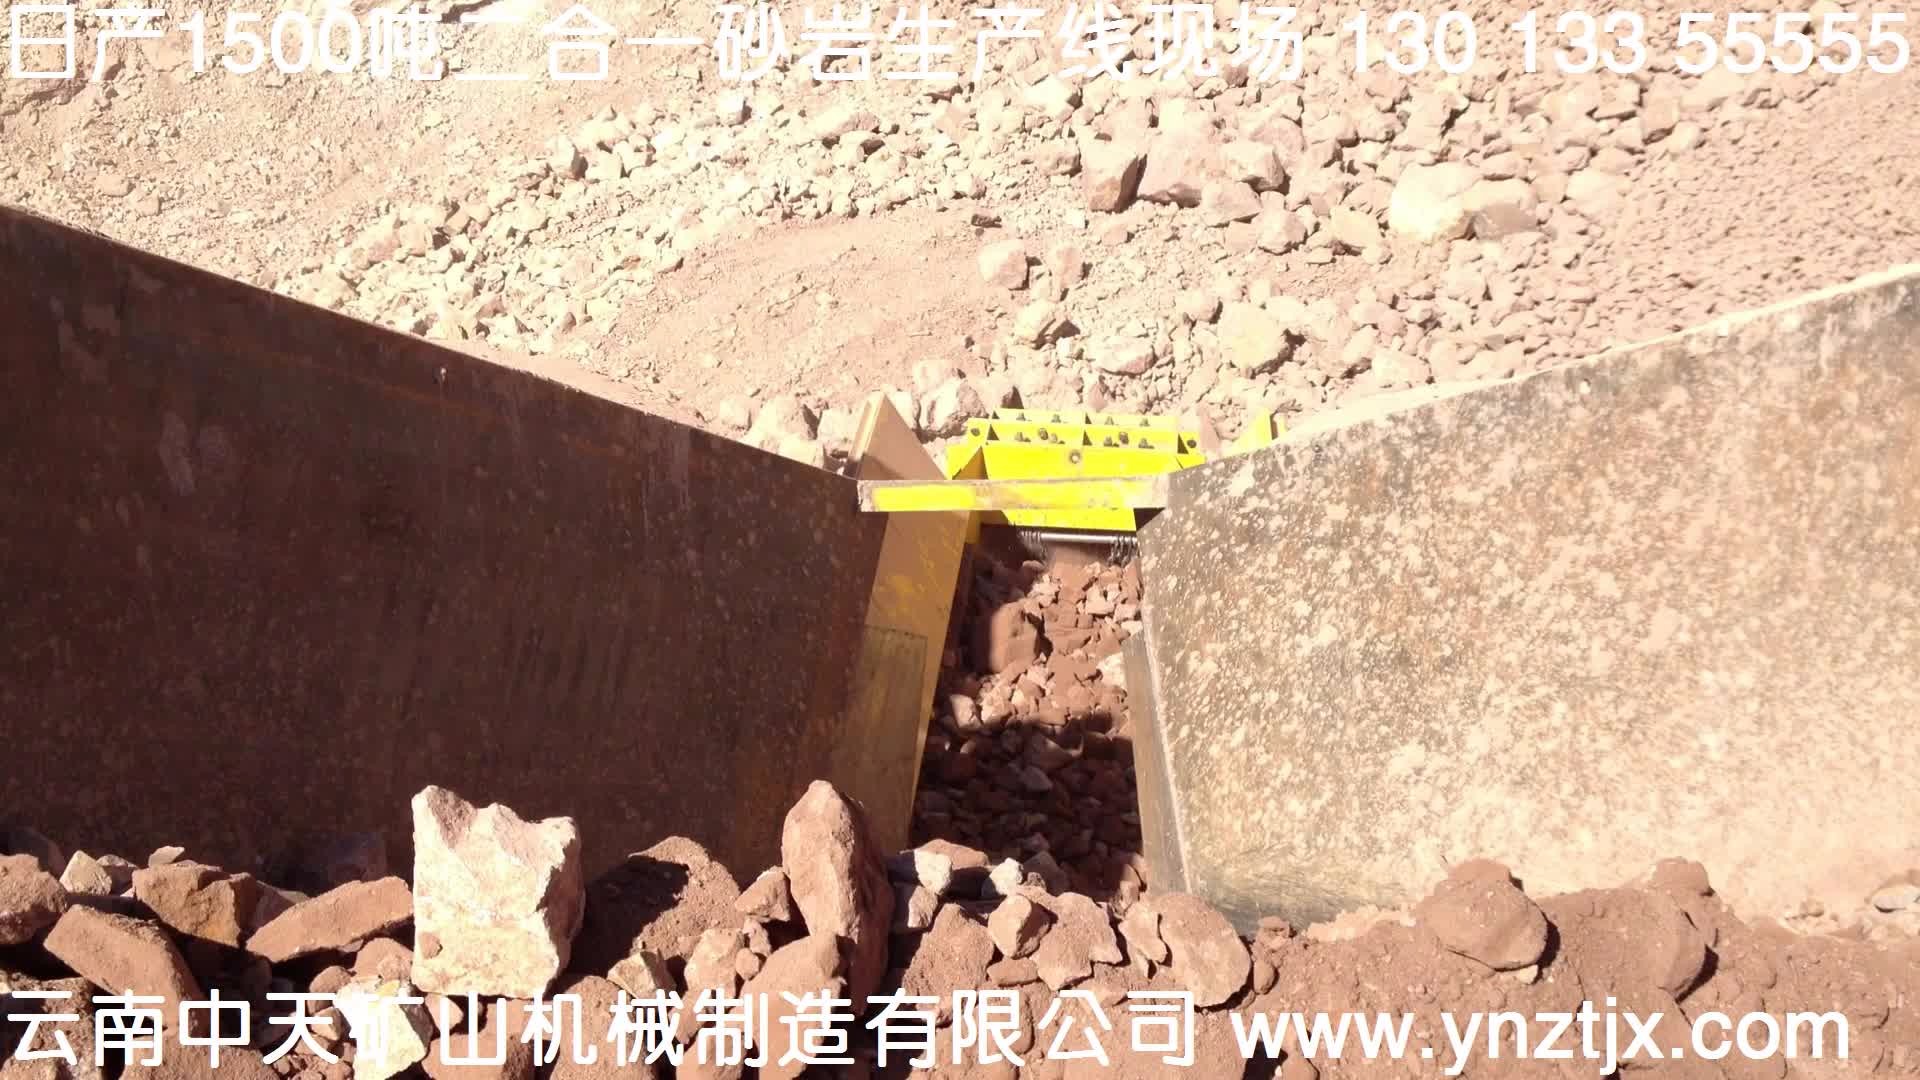 云南日产1500吨砂岩二合一生产线现场视频三